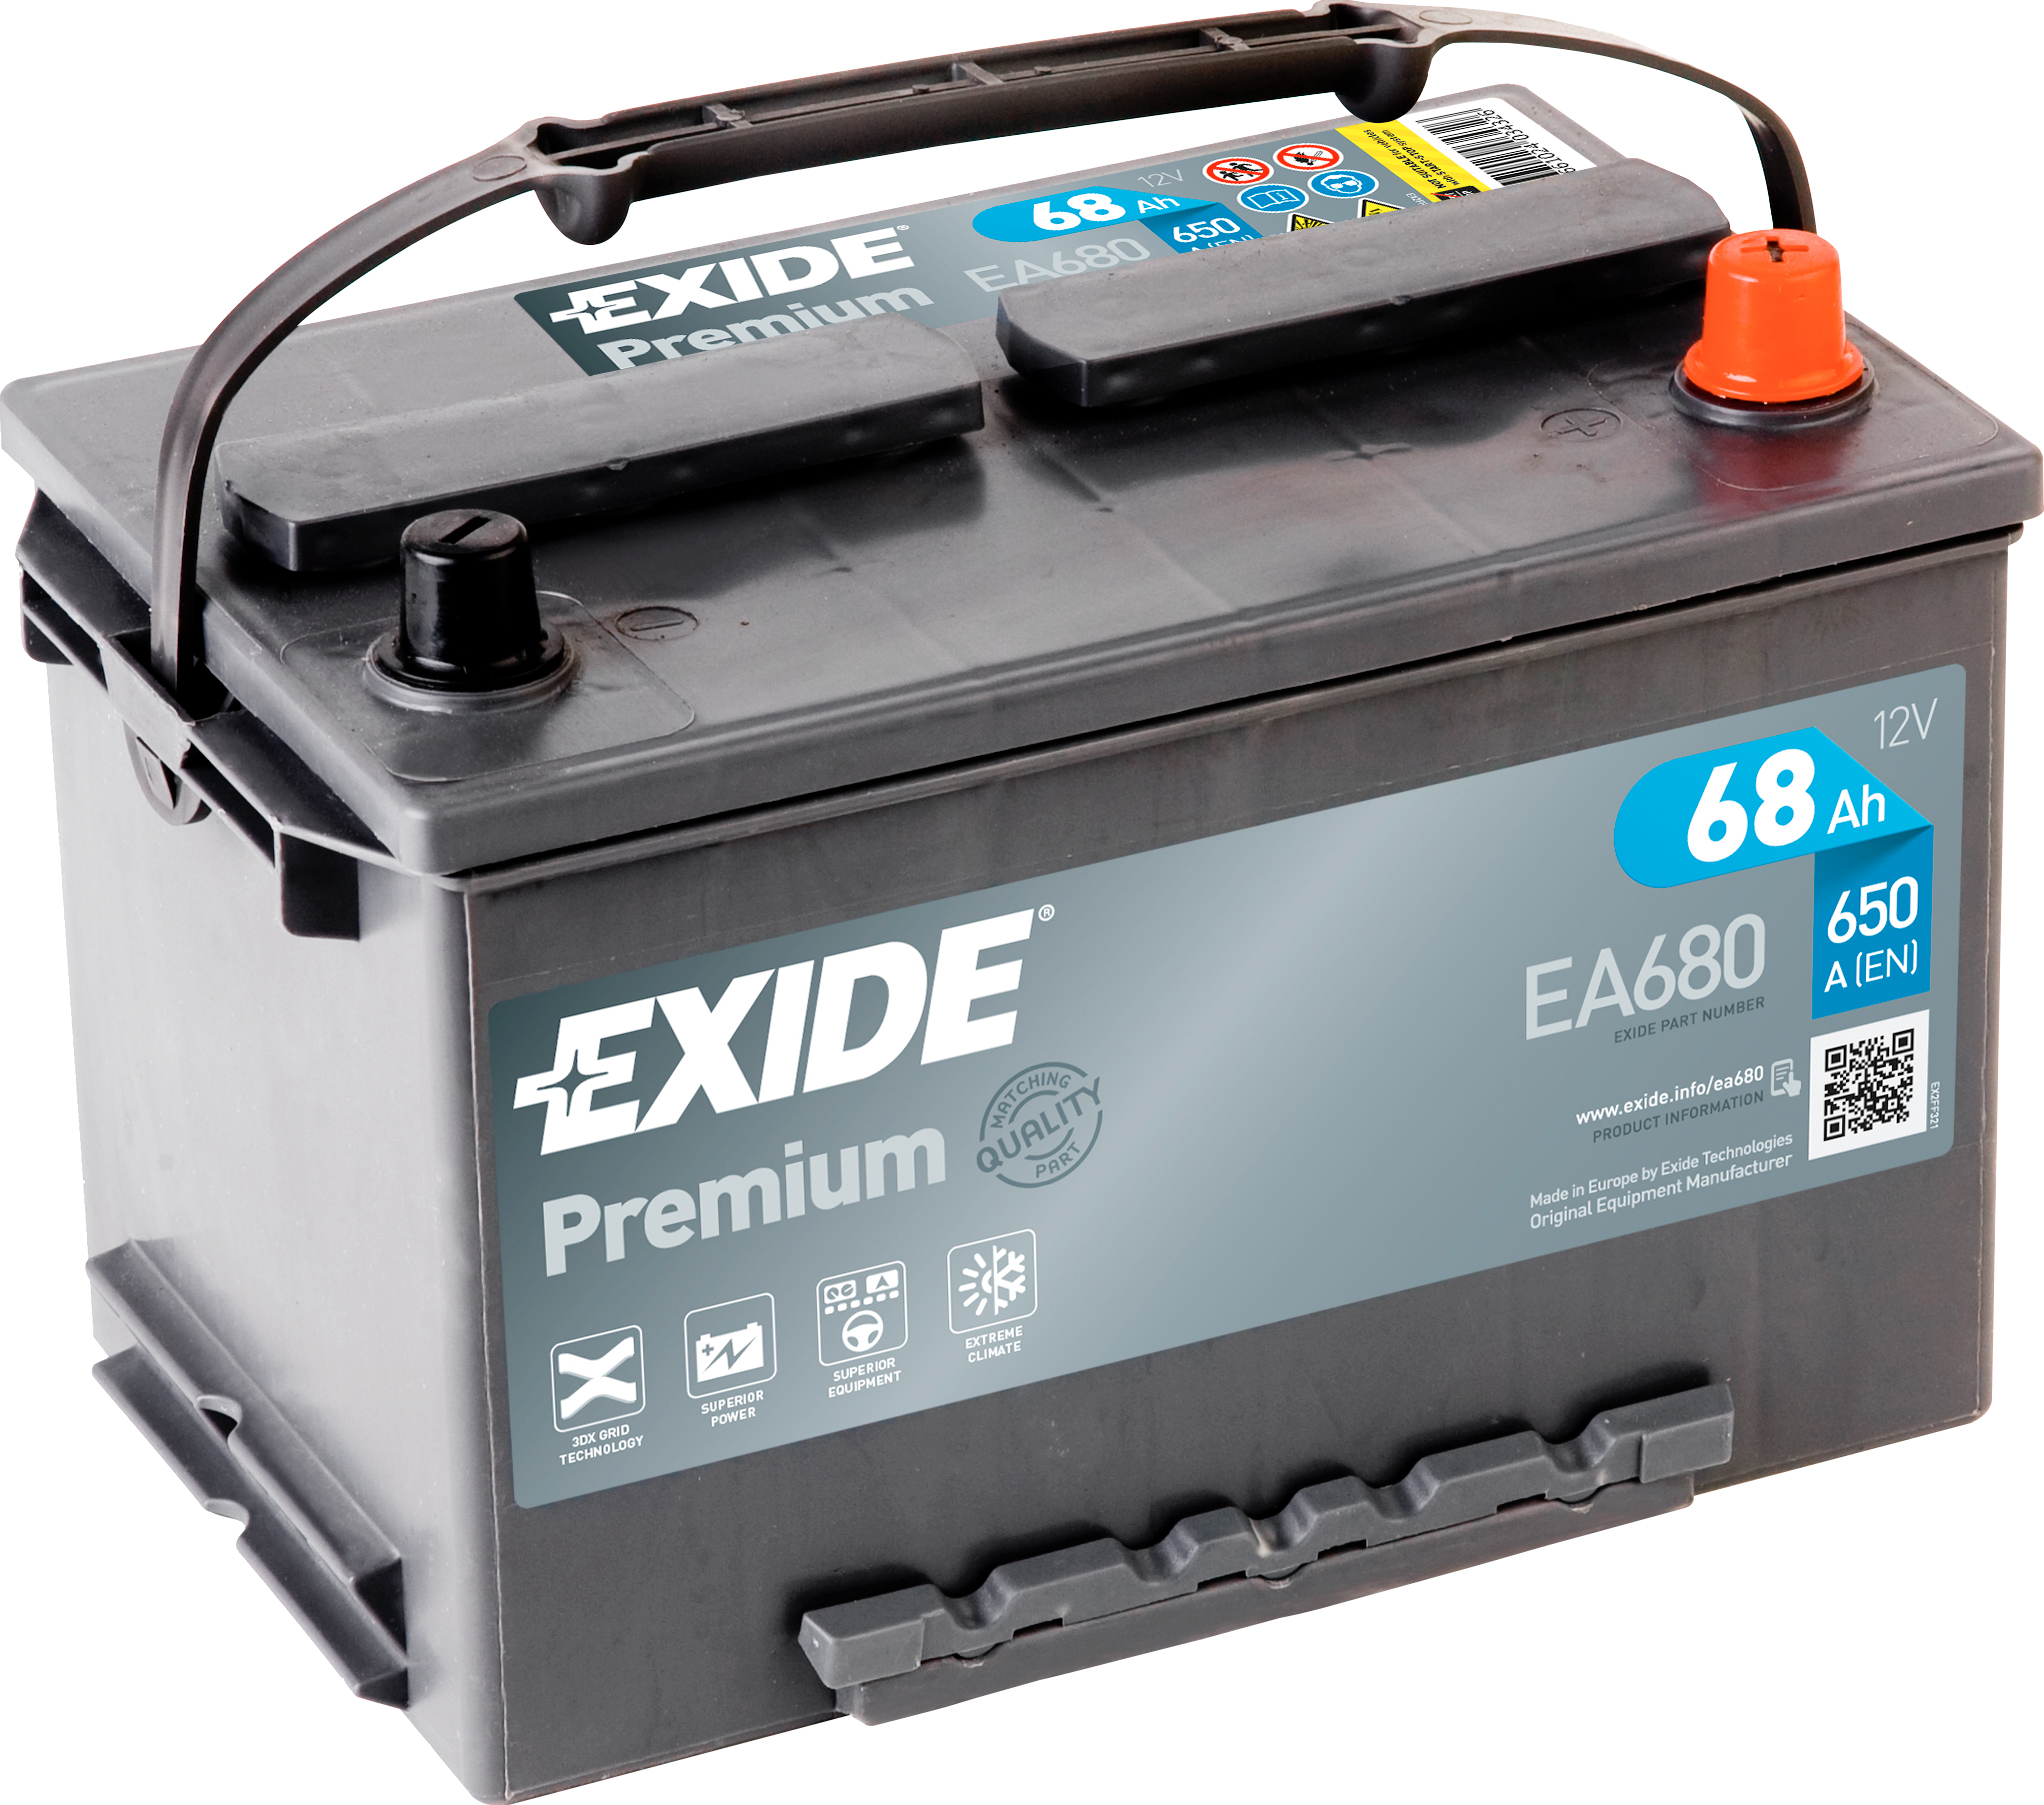 Аккумулятор EXIDE автомобильный PREMIUM 68Ah 650A (EN) Кислотный EXIDE EA680